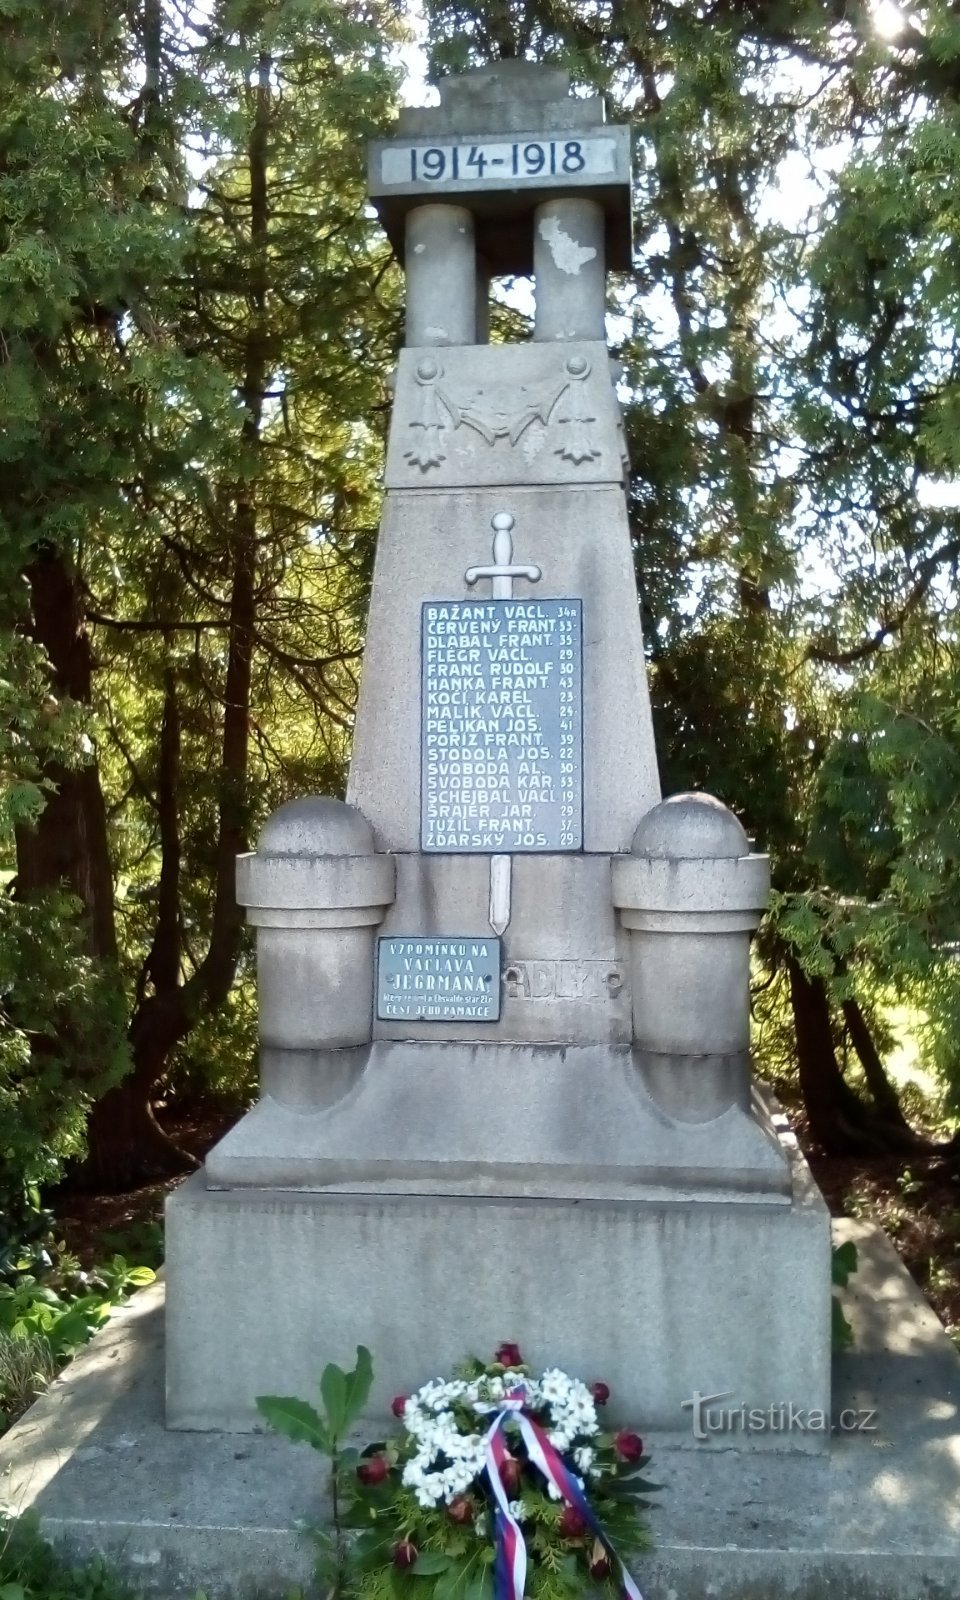 Monumentul celor căzuți în Staré Máteřov